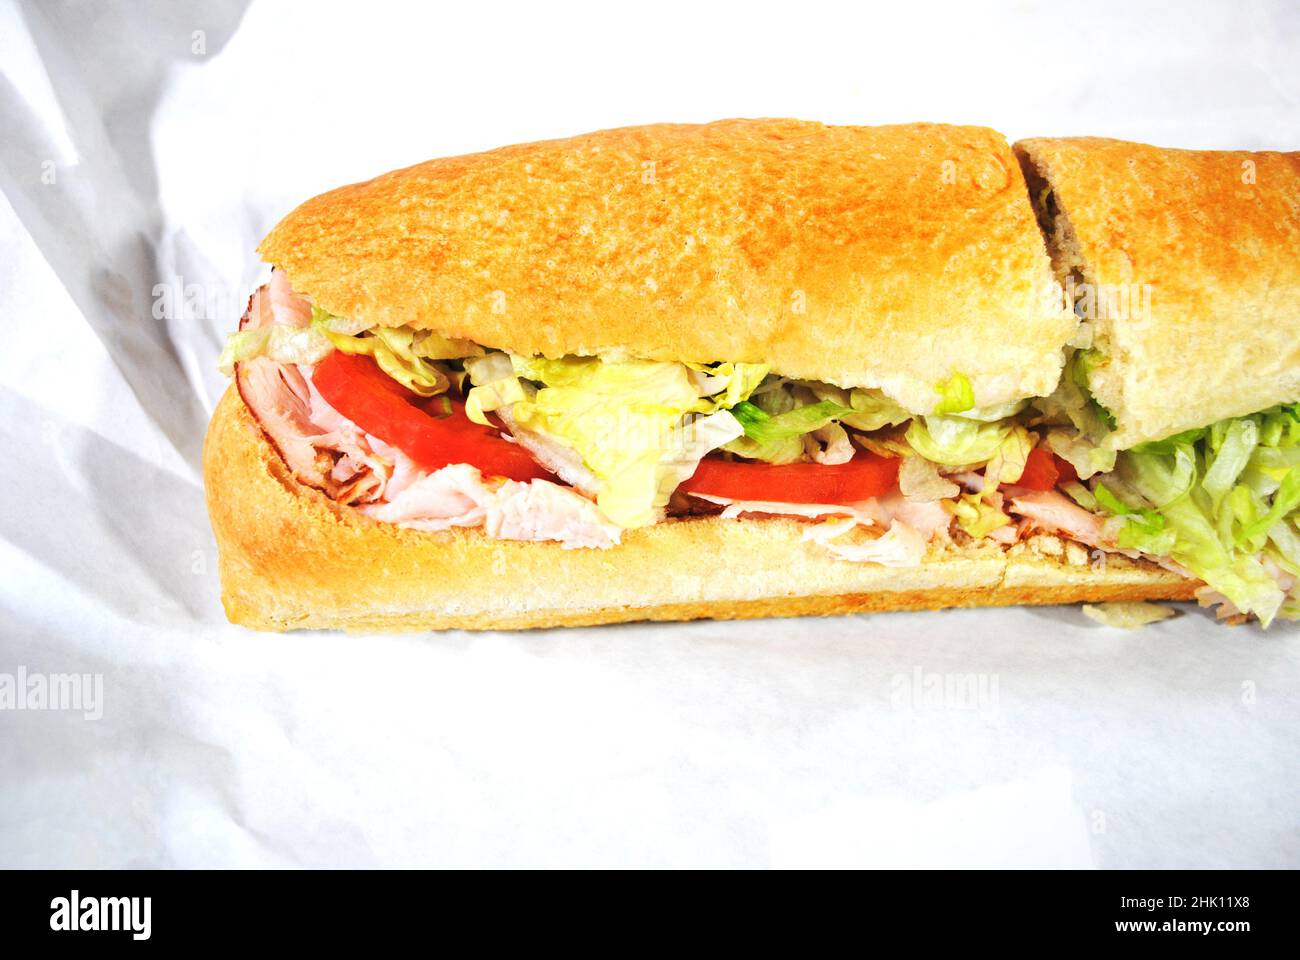 Nahaufnahme eines großen Turkey Hoagie Sub Sandwiches Stockfoto